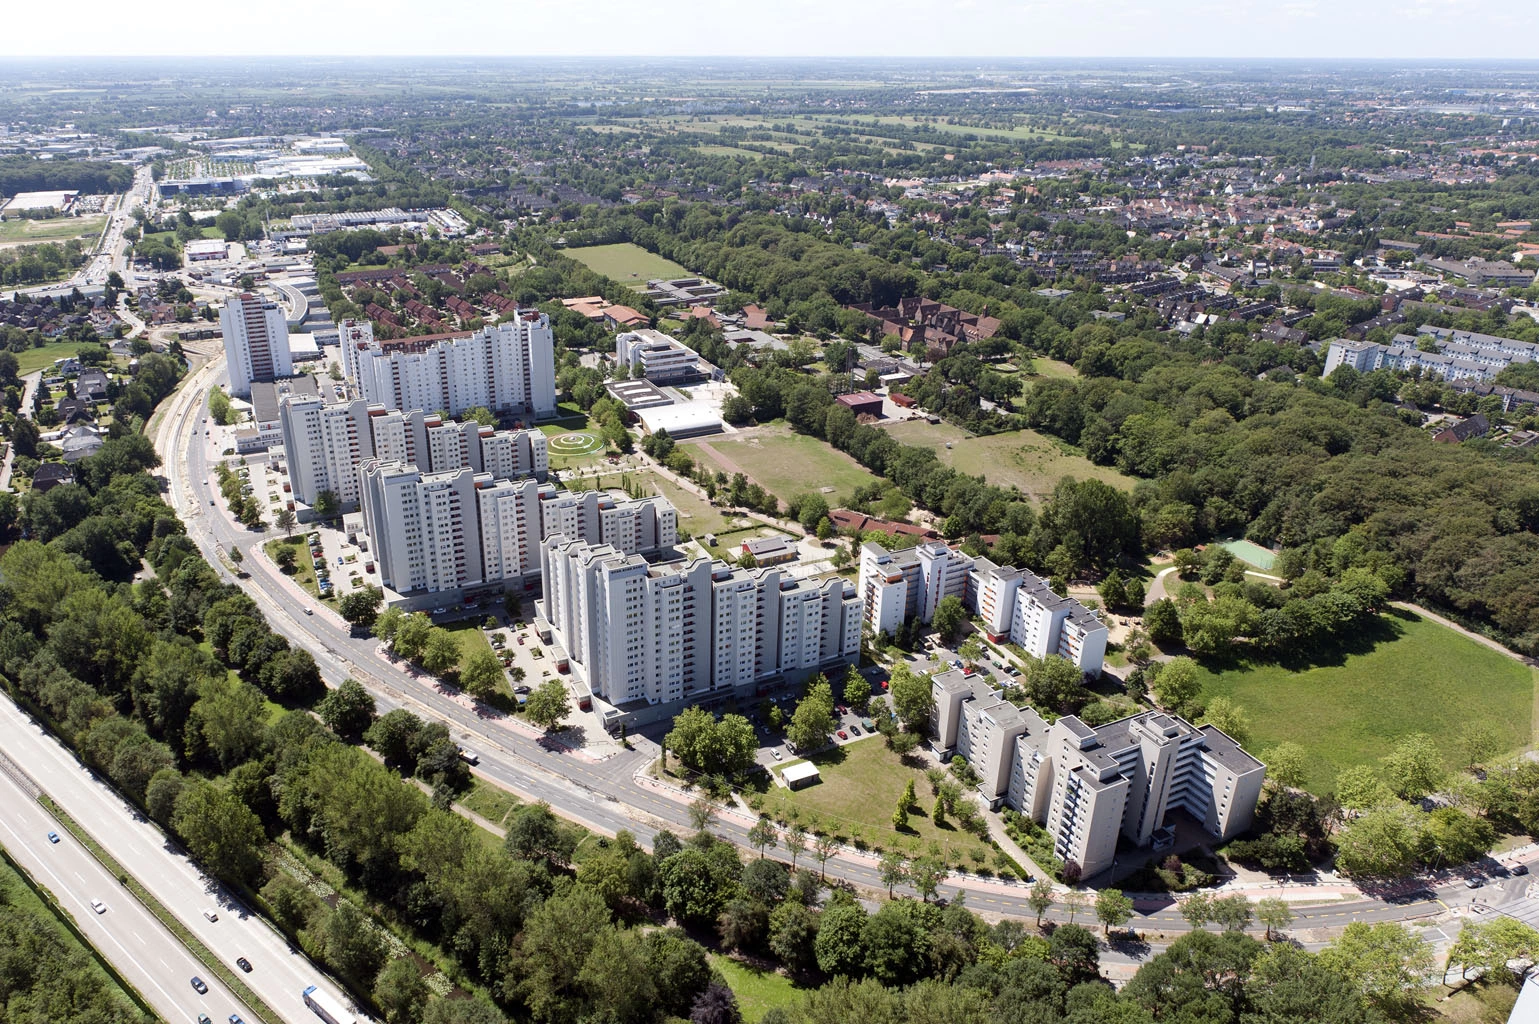 Luftblick auf eine Siedlung aus weissen Hochhaus-Wohnblöcken mit Strassen und Bäumen drumherum